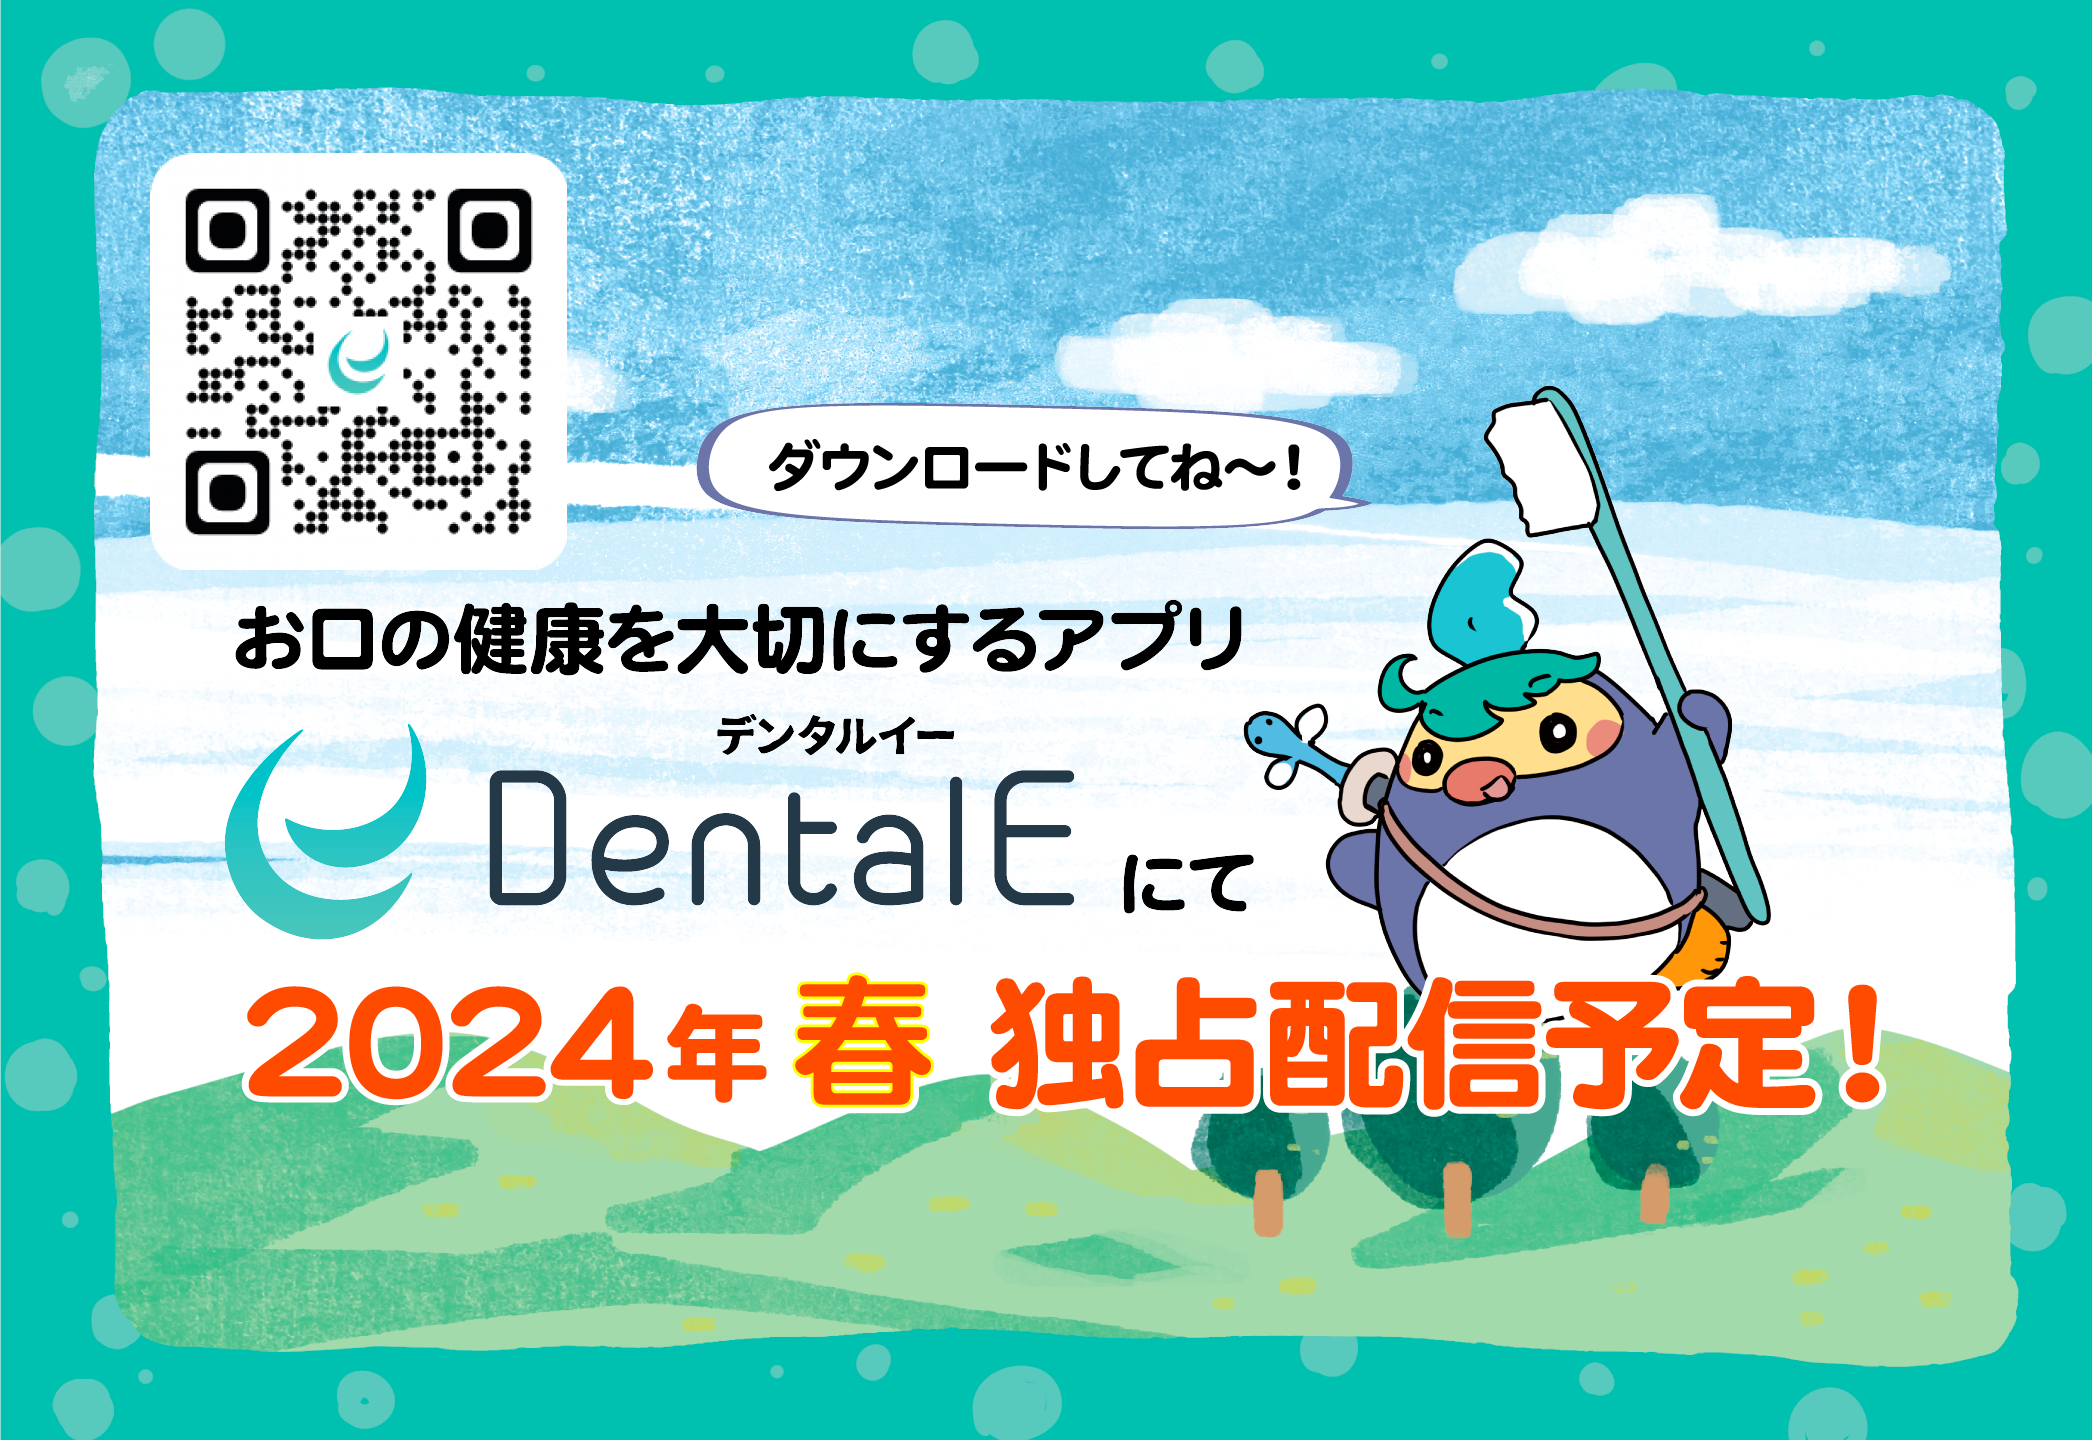 Dental E